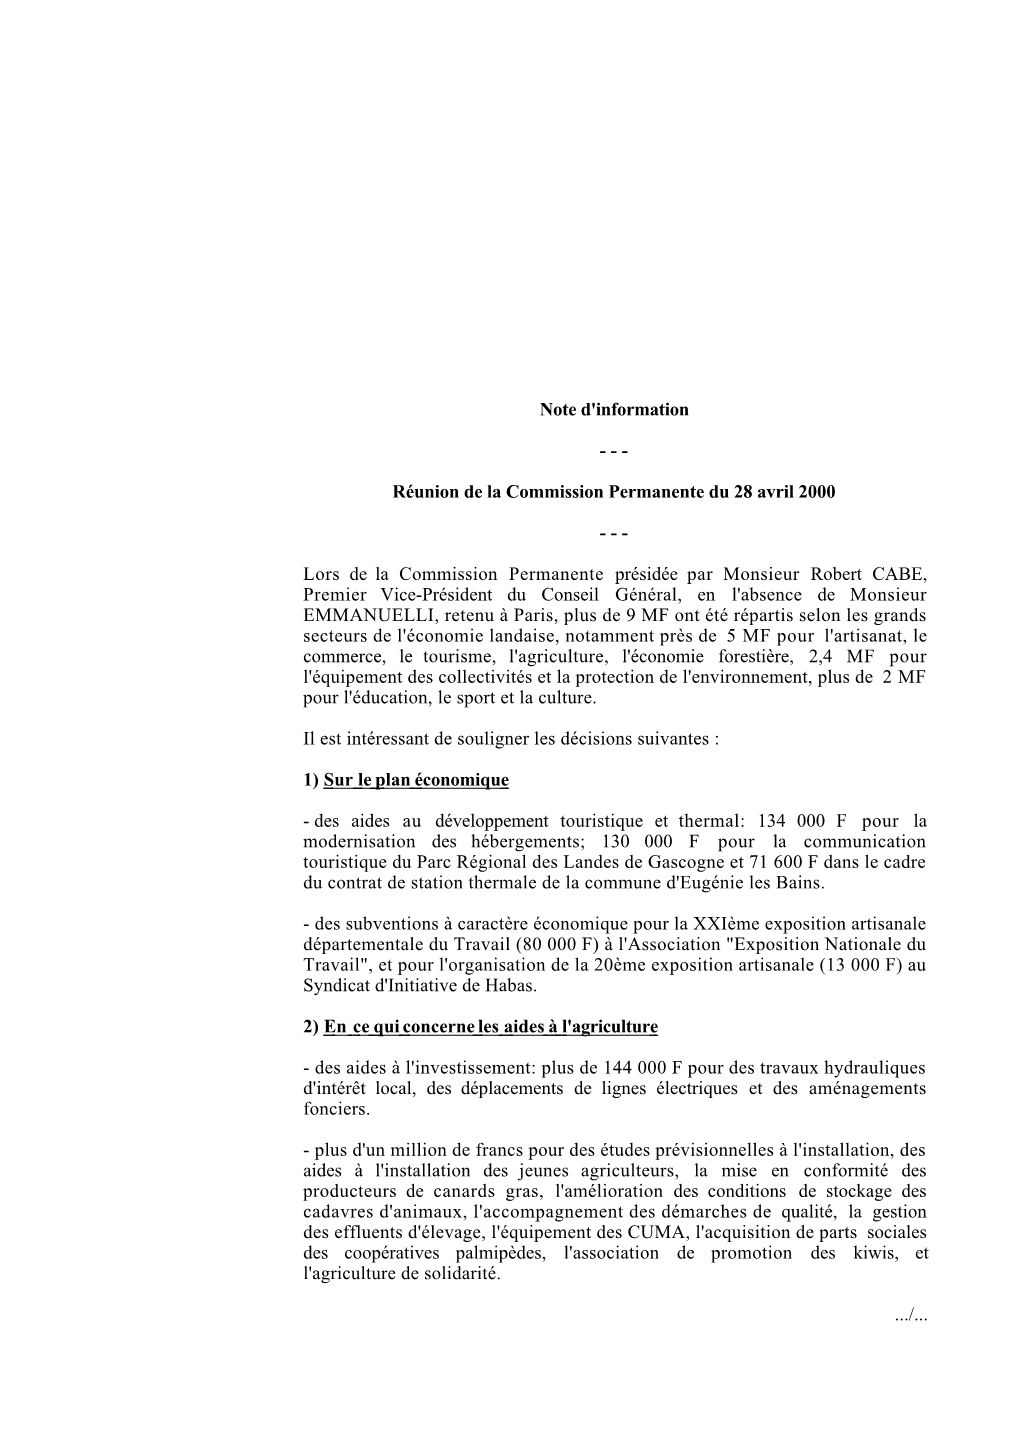 Commission Permanente Du 28 Avril 2000